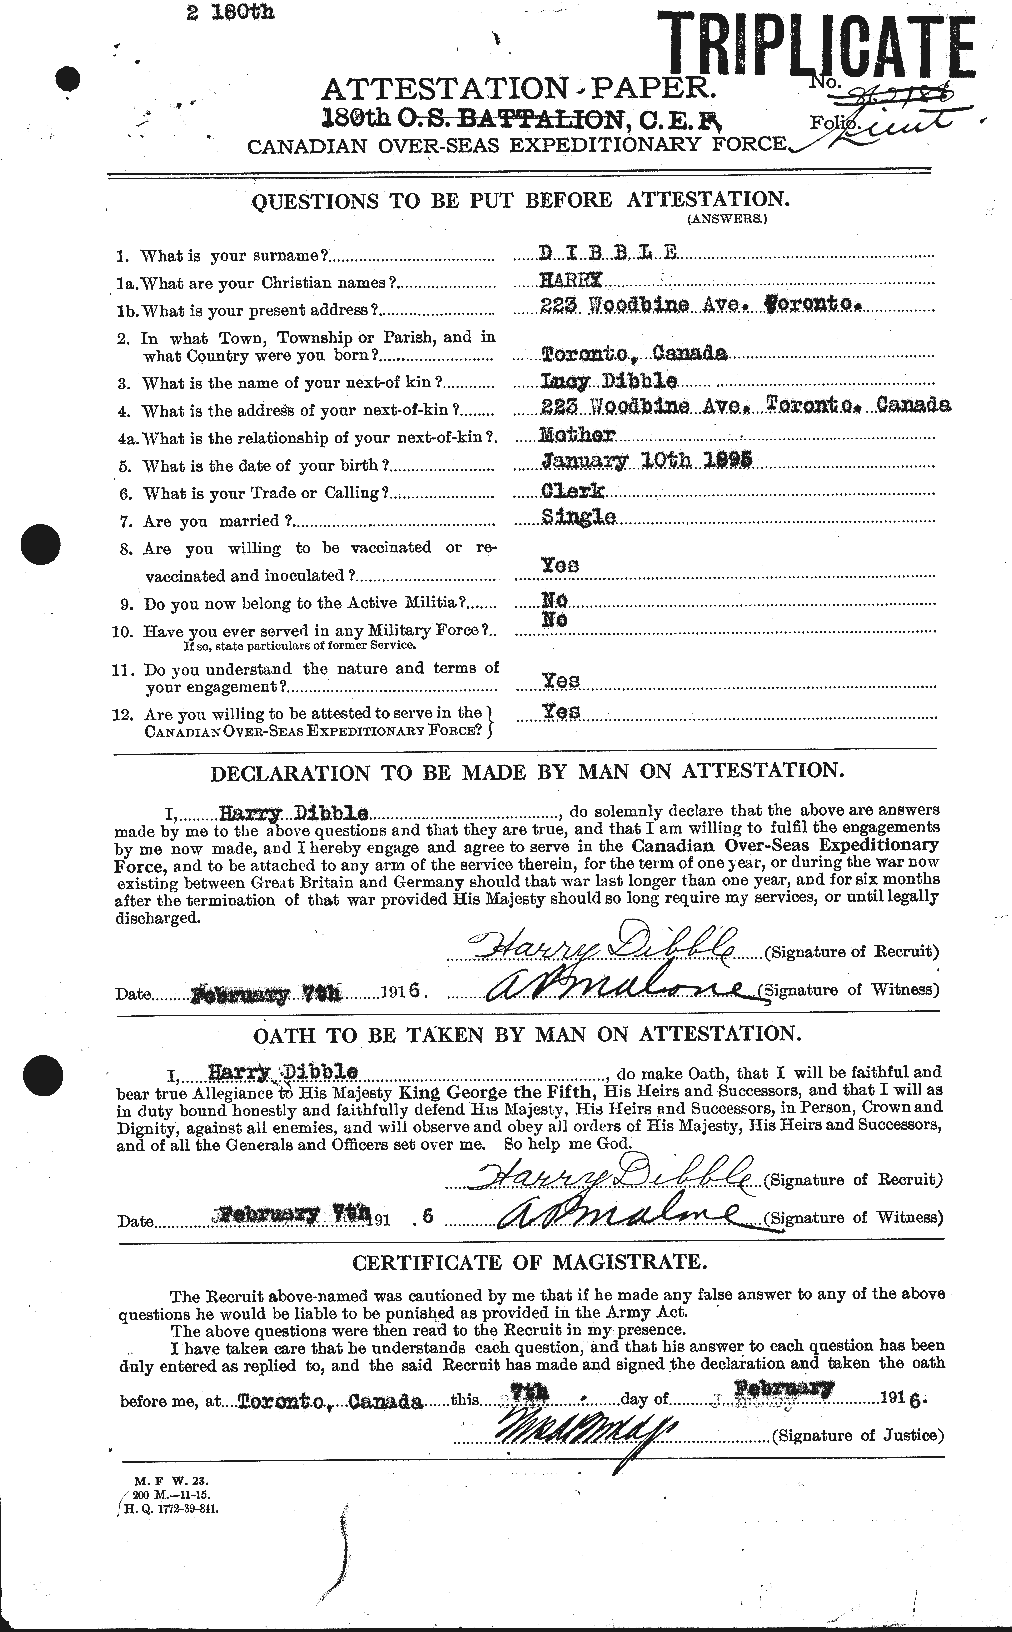 Dossiers du Personnel de la Première Guerre mondiale - CEC 293968a